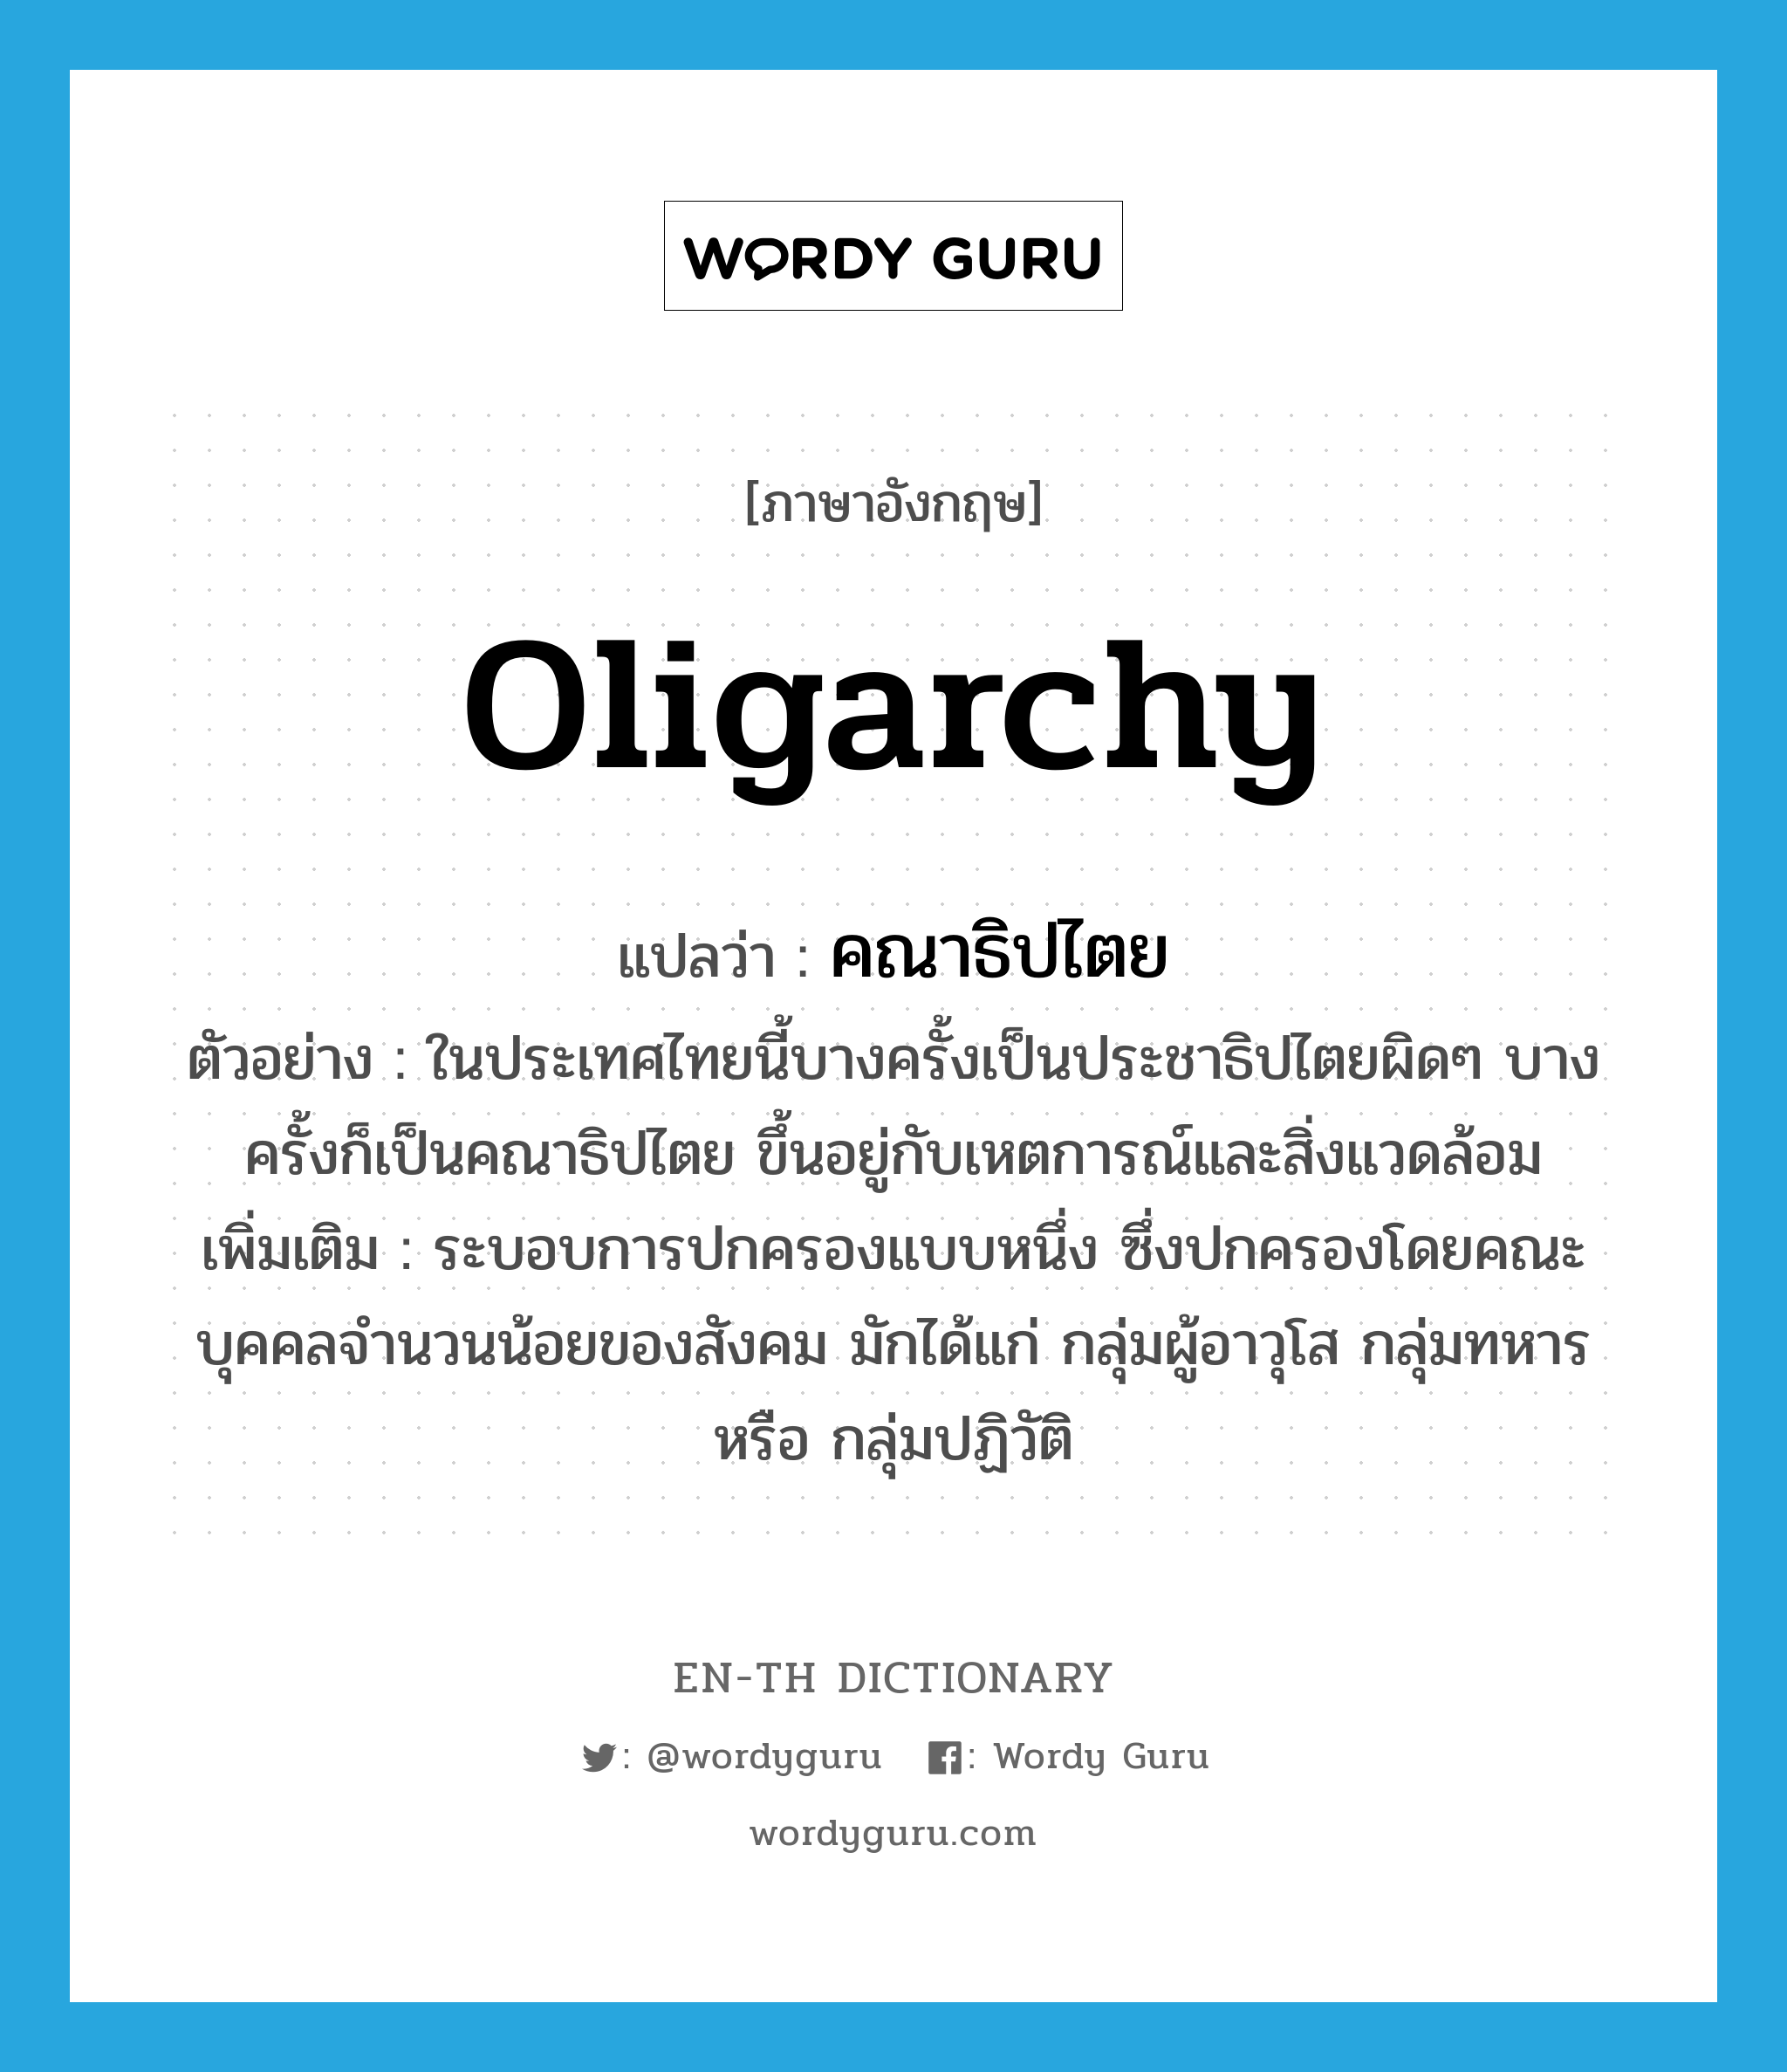 oligarchy แปลว่า?, คำศัพท์ภาษาอังกฤษ oligarchy แปลว่า คณาธิปไตย ประเภท N ตัวอย่าง ในประเทศไทยนี้บางครั้งเป็นประชาธิปไตยผิดๆ บางครั้งก็เป็นคณาธิปไตย ขึ้นอยู่กับเหตการณ์และสิ่งแวดล้อม เพิ่มเติม ระบอบการปกครองแบบหนึ่ง ซึ่งปกครองโดยคณะบุคคลจำนวนน้อยของสังคม มักได้แก่ กลุ่มผู้อาวุโส กลุ่มทหาร หรือ กลุ่มปฏิวัติ หมวด N